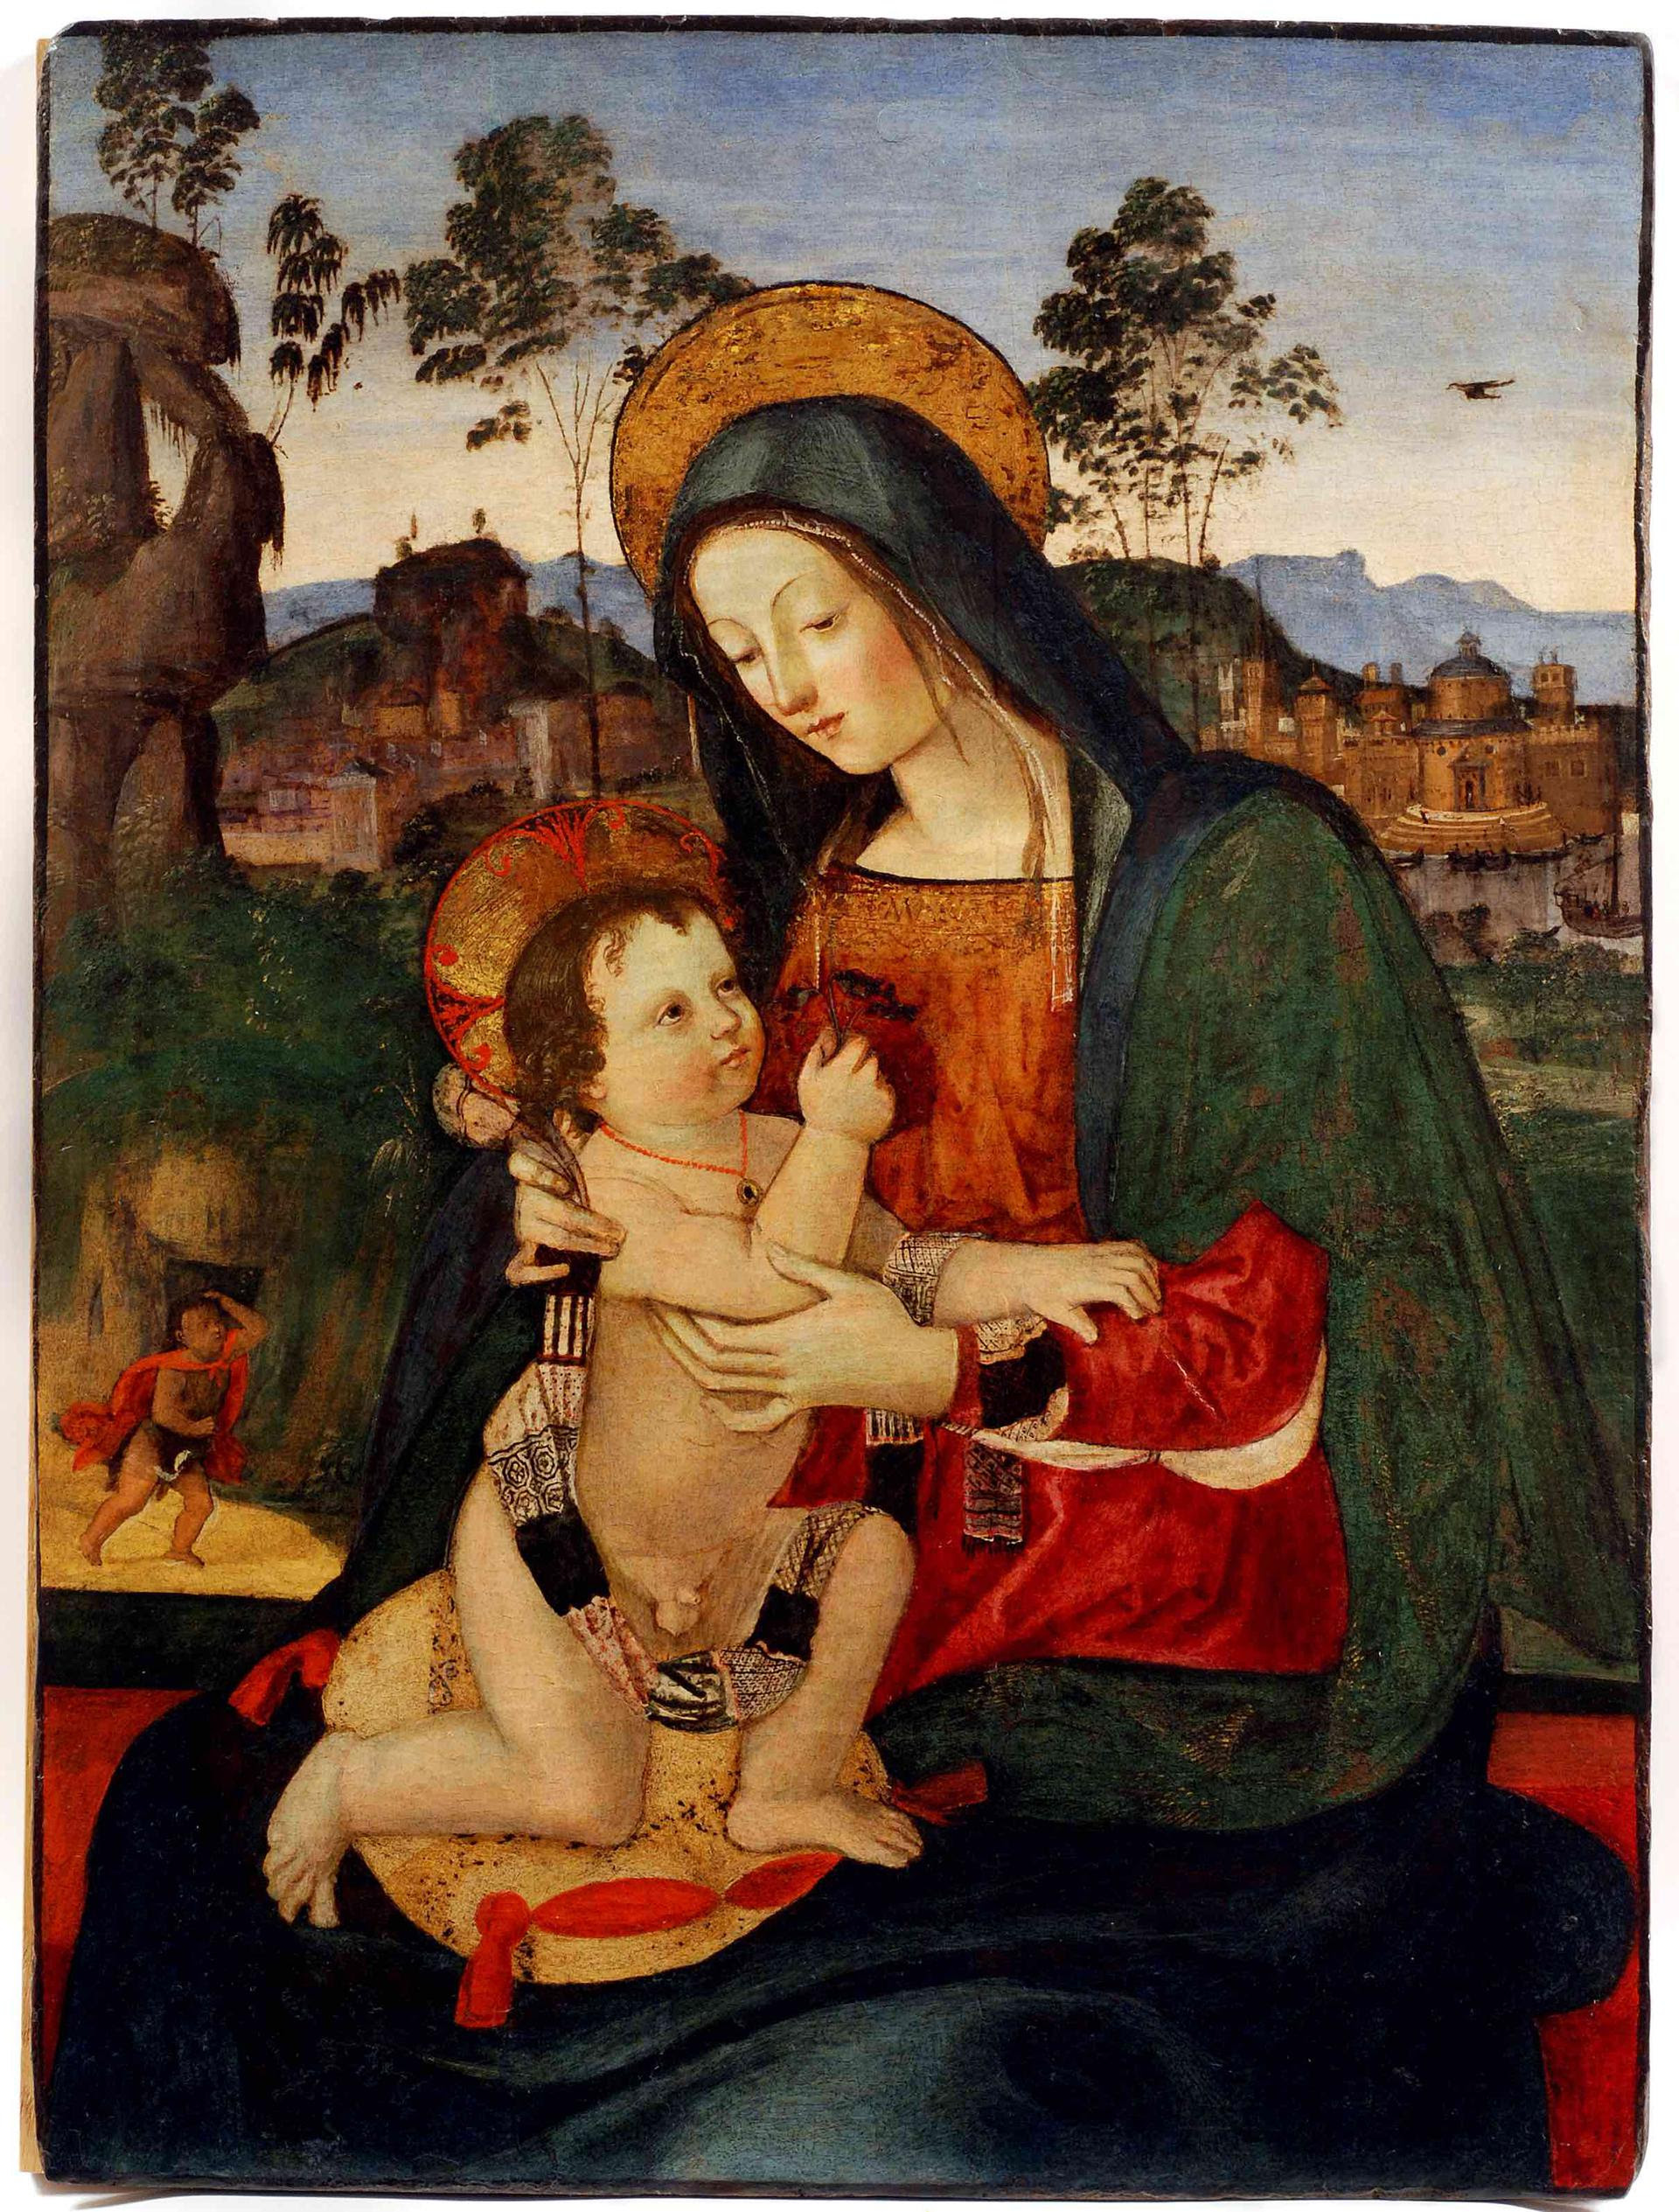 Mostra Perugia - Raffaello in Umbria e la sua eredità in Accademia - immagini